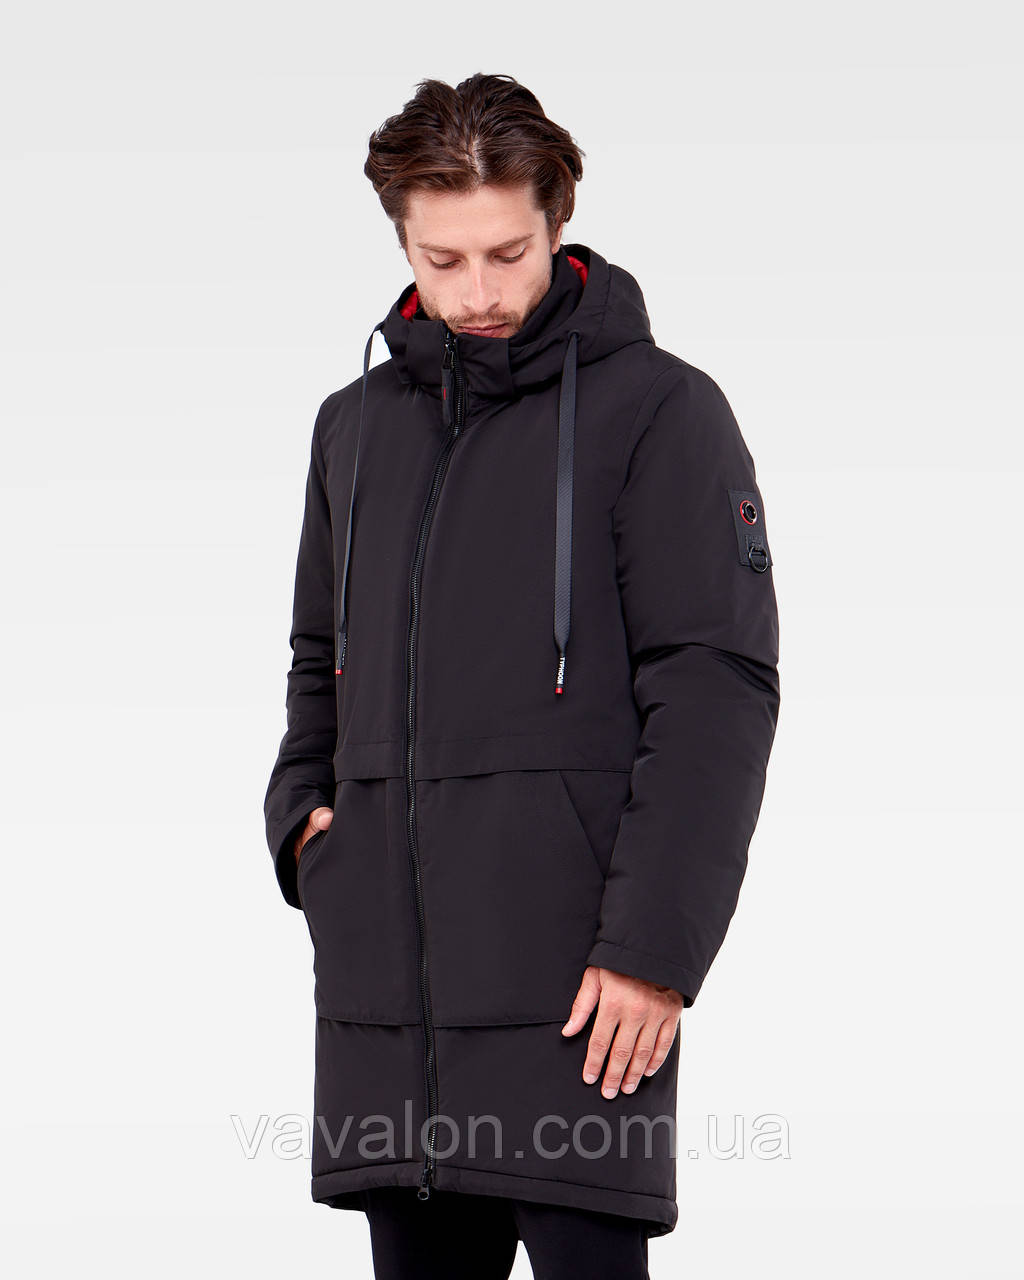 Зимова чоловіча куртка Vavalon KZ-P910 black